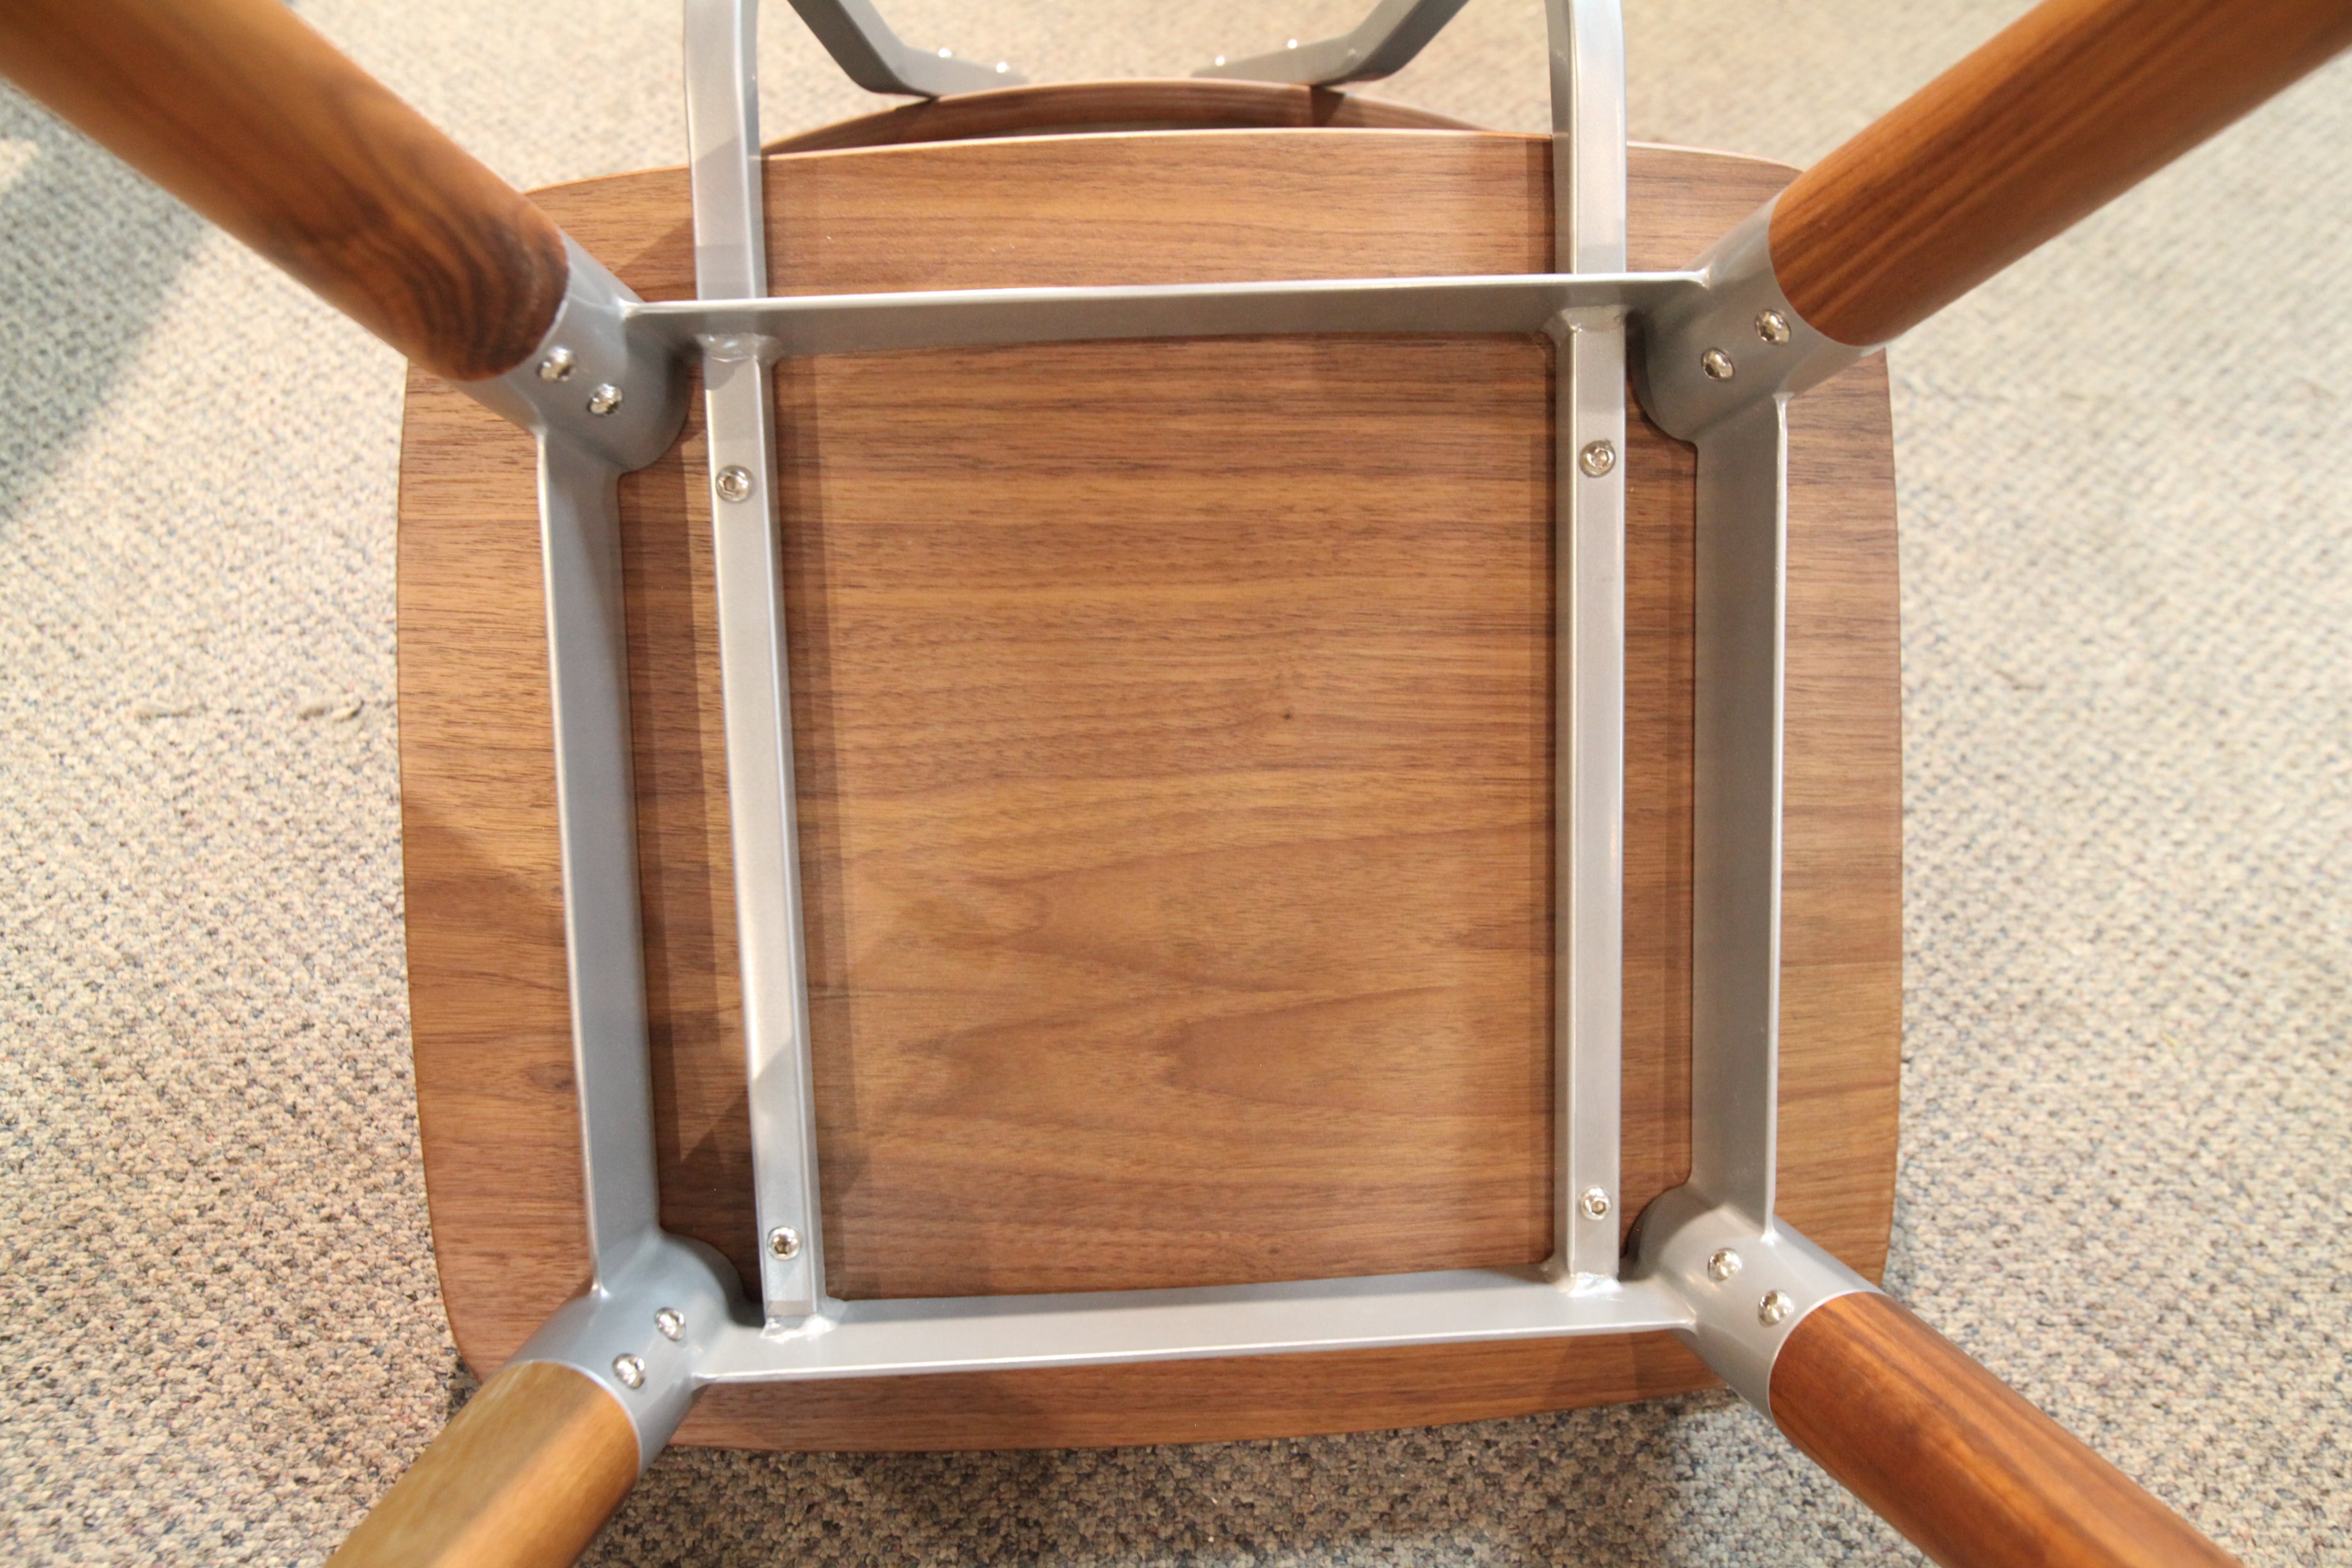 Sean Dix Walnut / Metal Chair (17.5"W x 31.75"H)